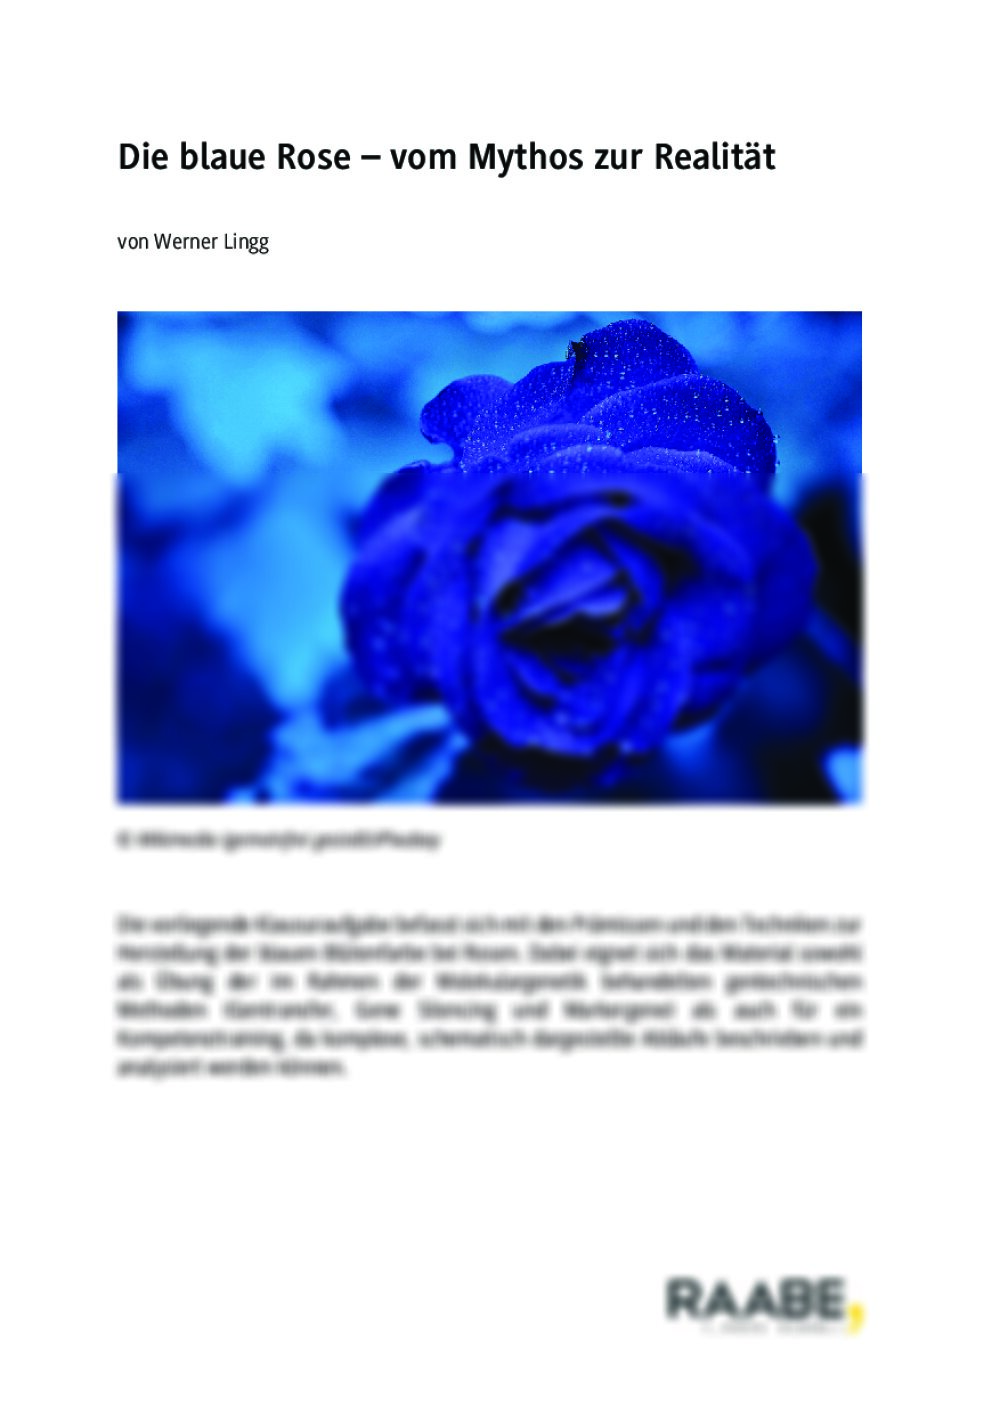 Die Zucht der blaue Rose - Seite 1